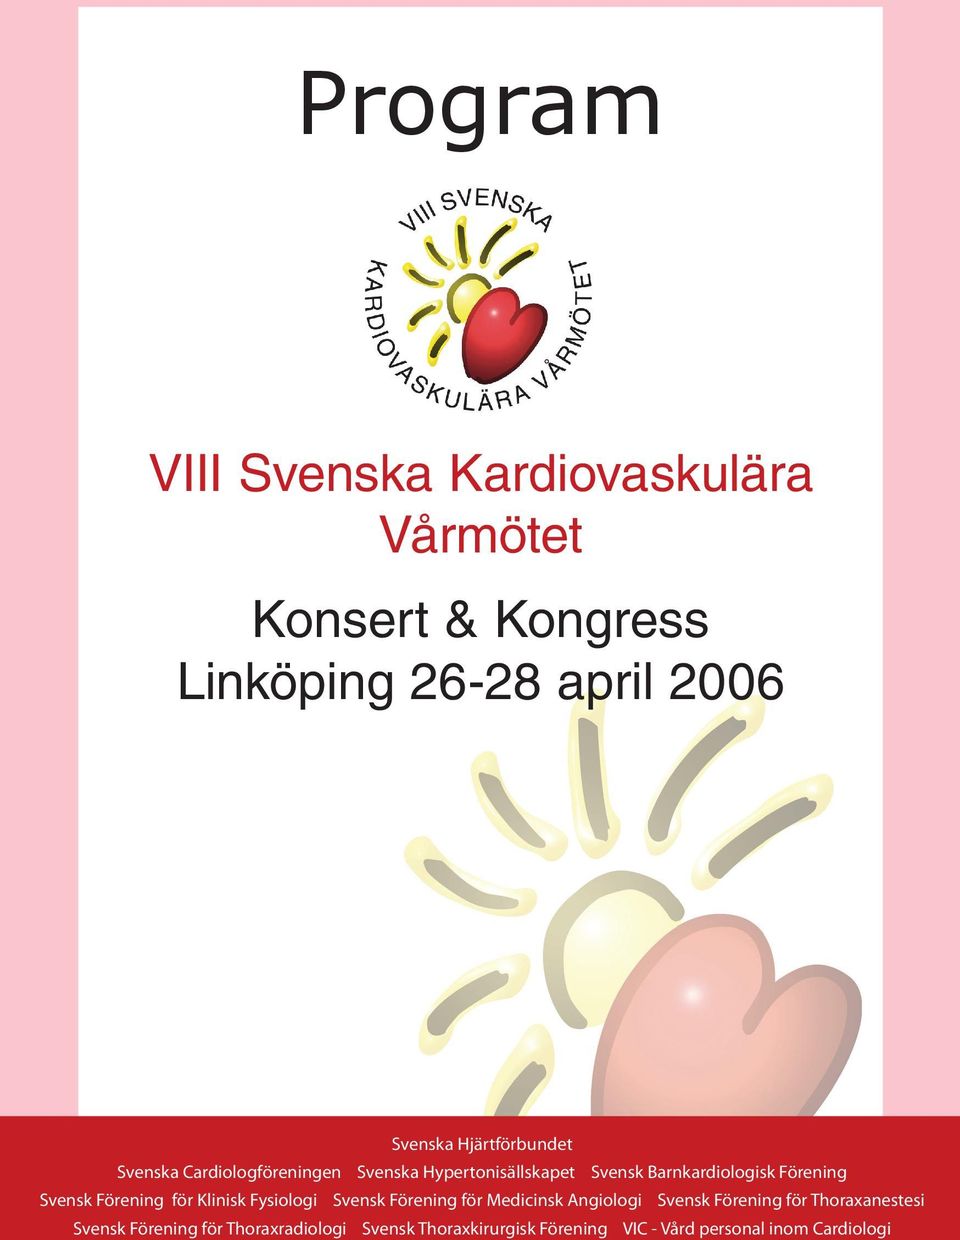 Barnkardiologisk Förening www.malmokongressbyra.